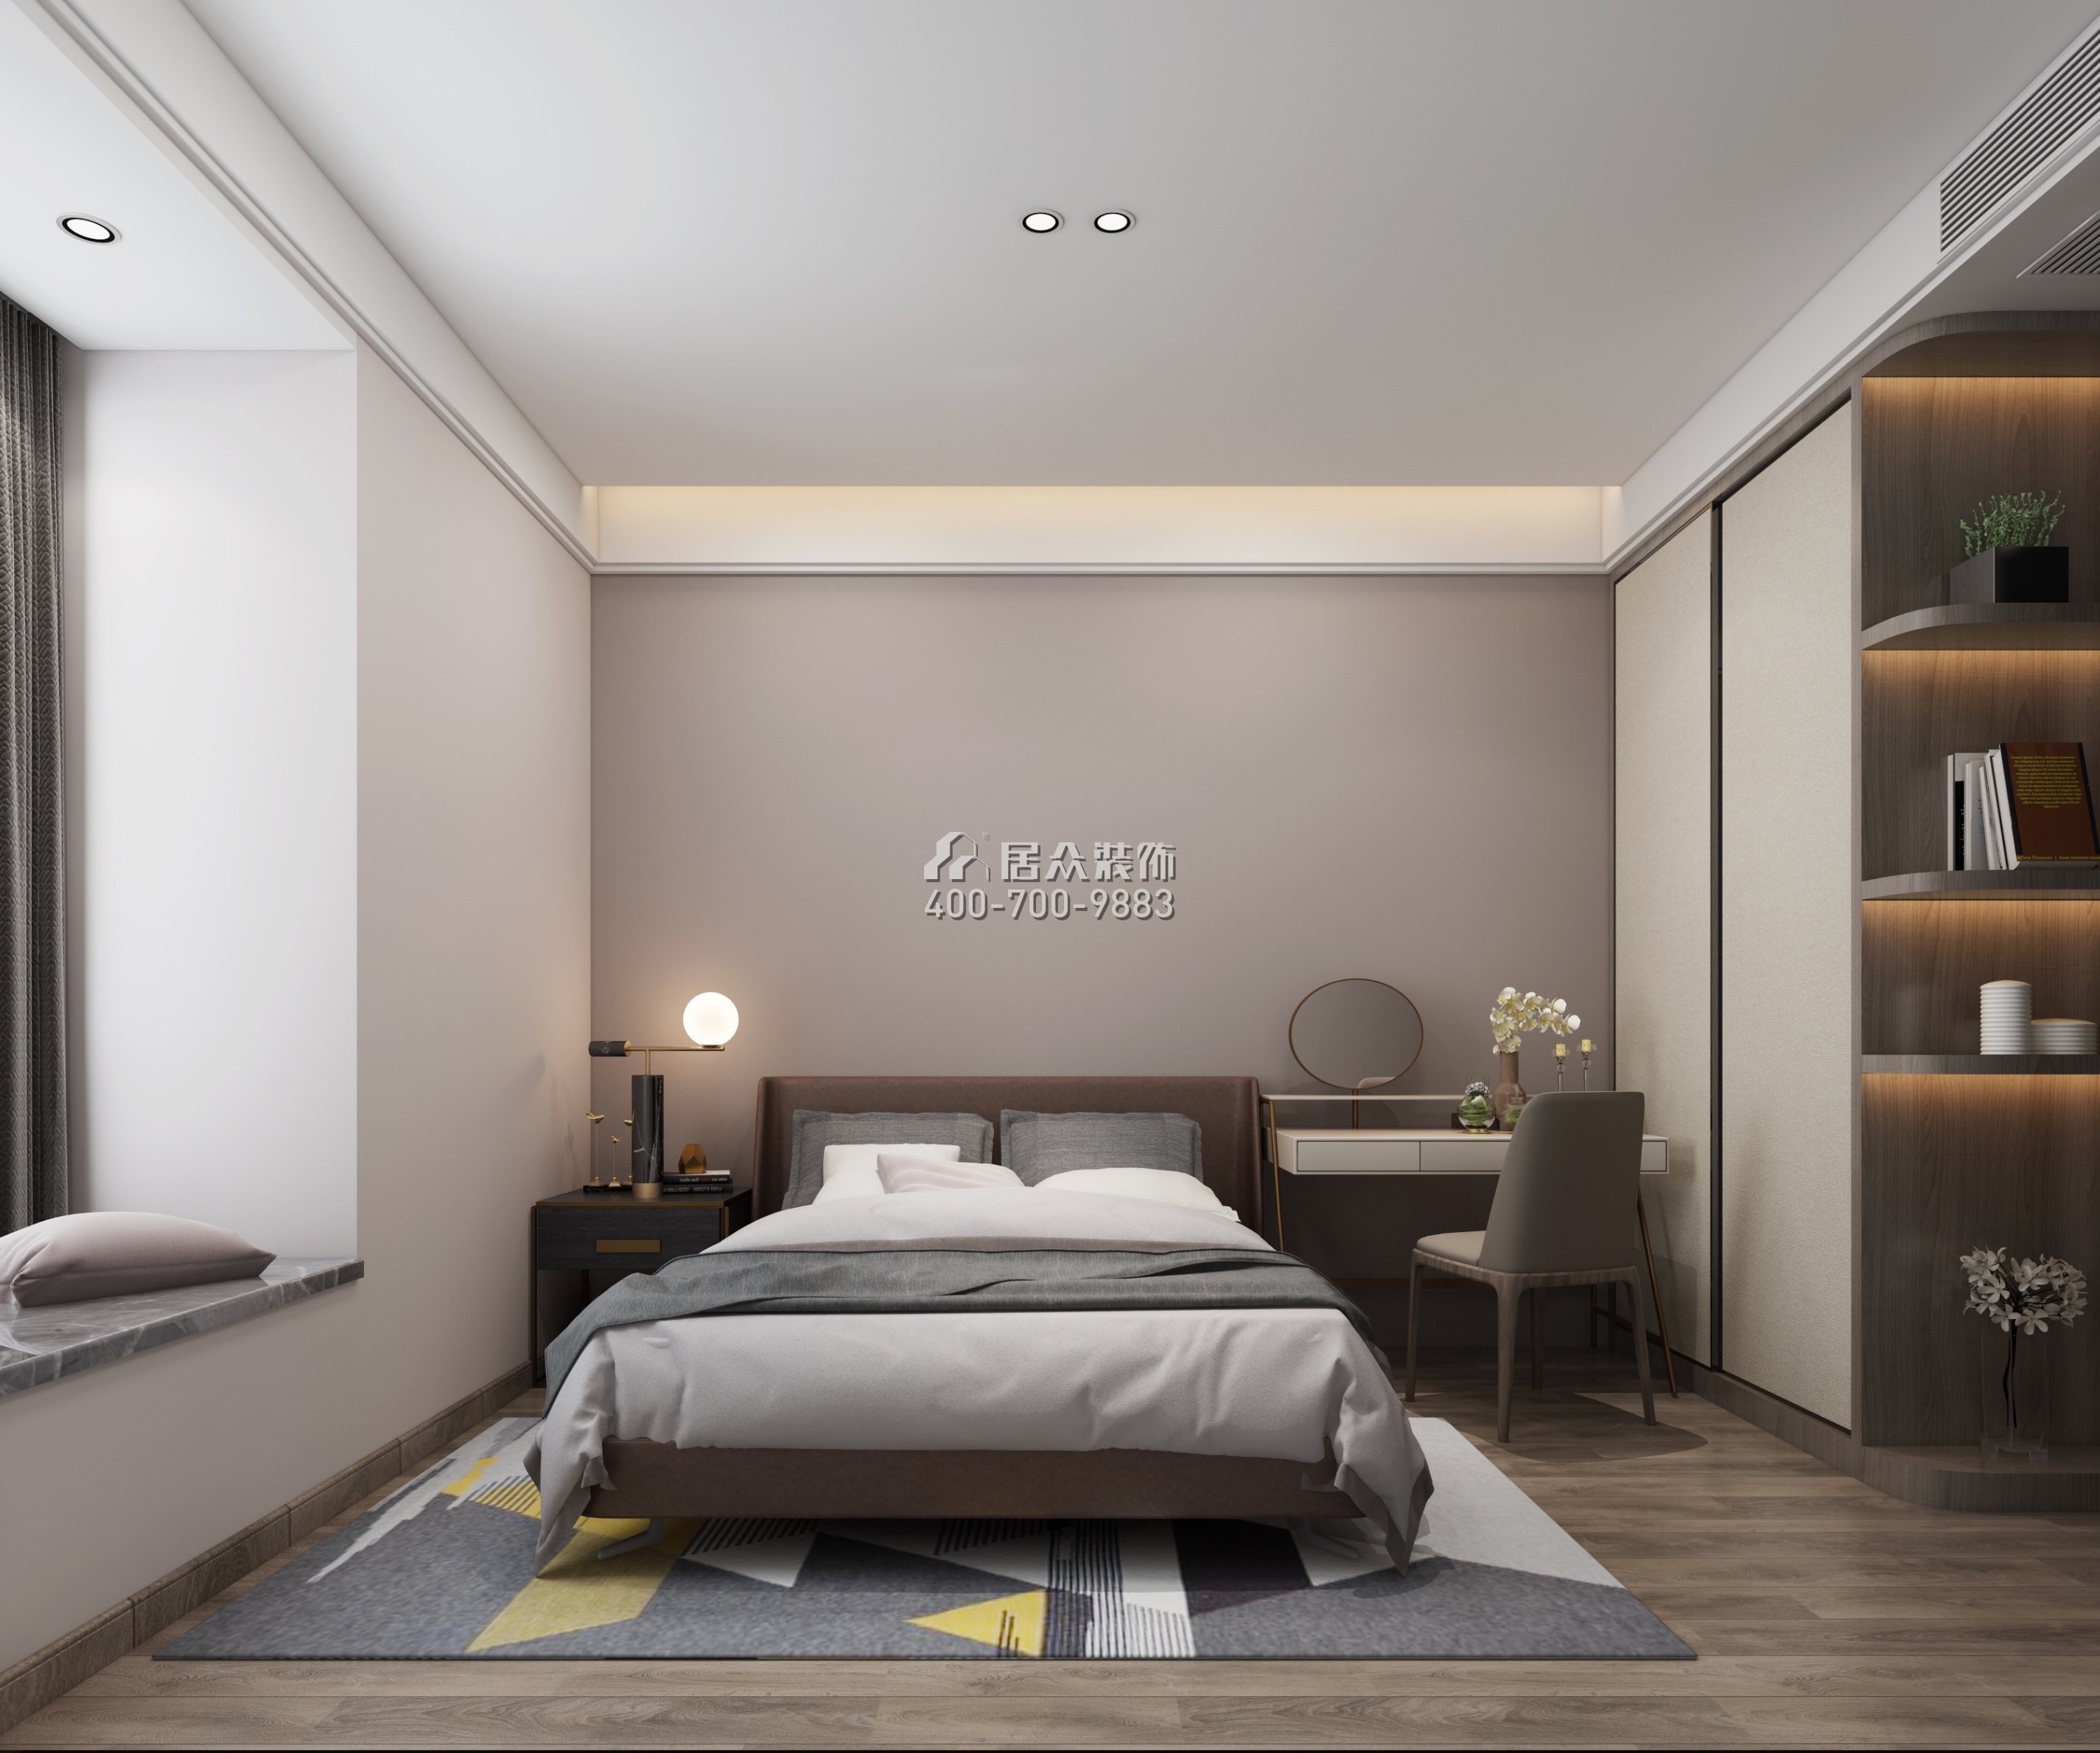 水湾壹玖柒玖广场一期169平方米现代简约风格平层户型卧室装修效果图